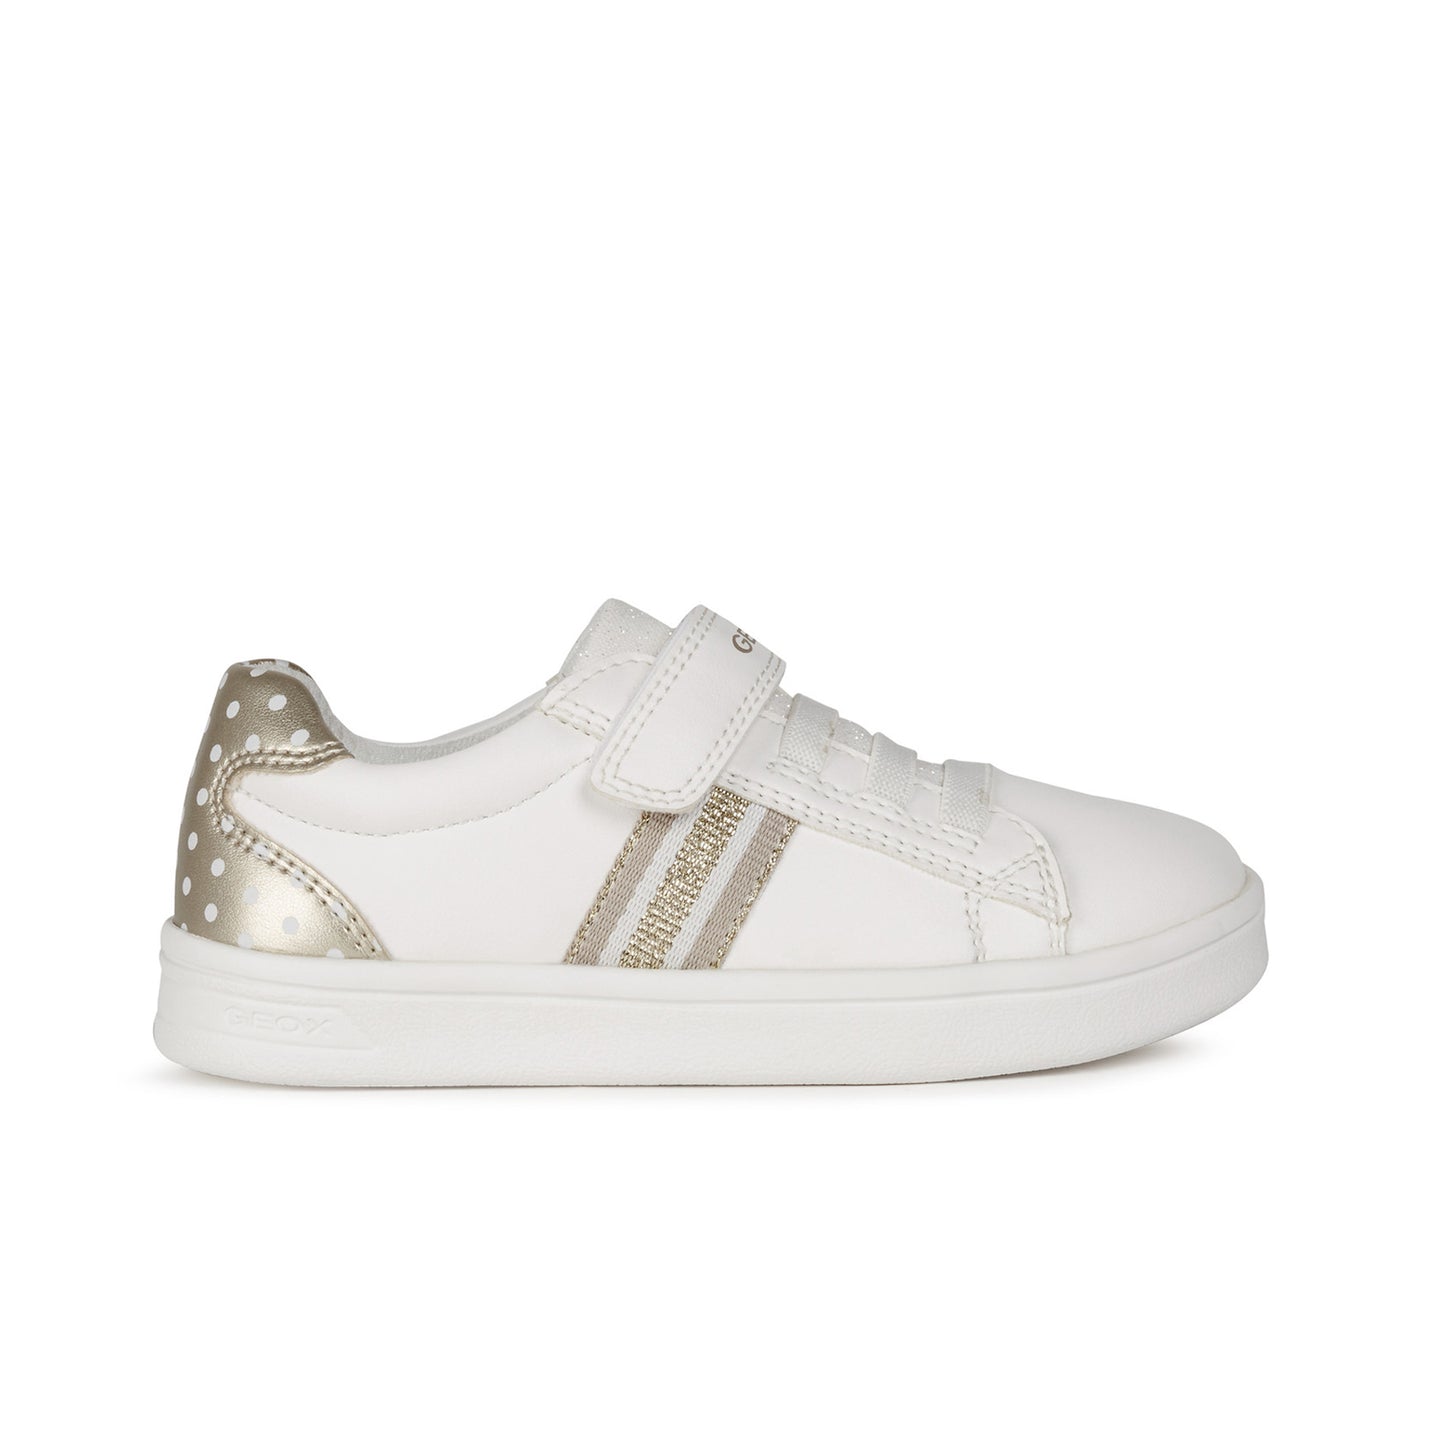 DJ Rock Girl's Sneaker in White/Gold